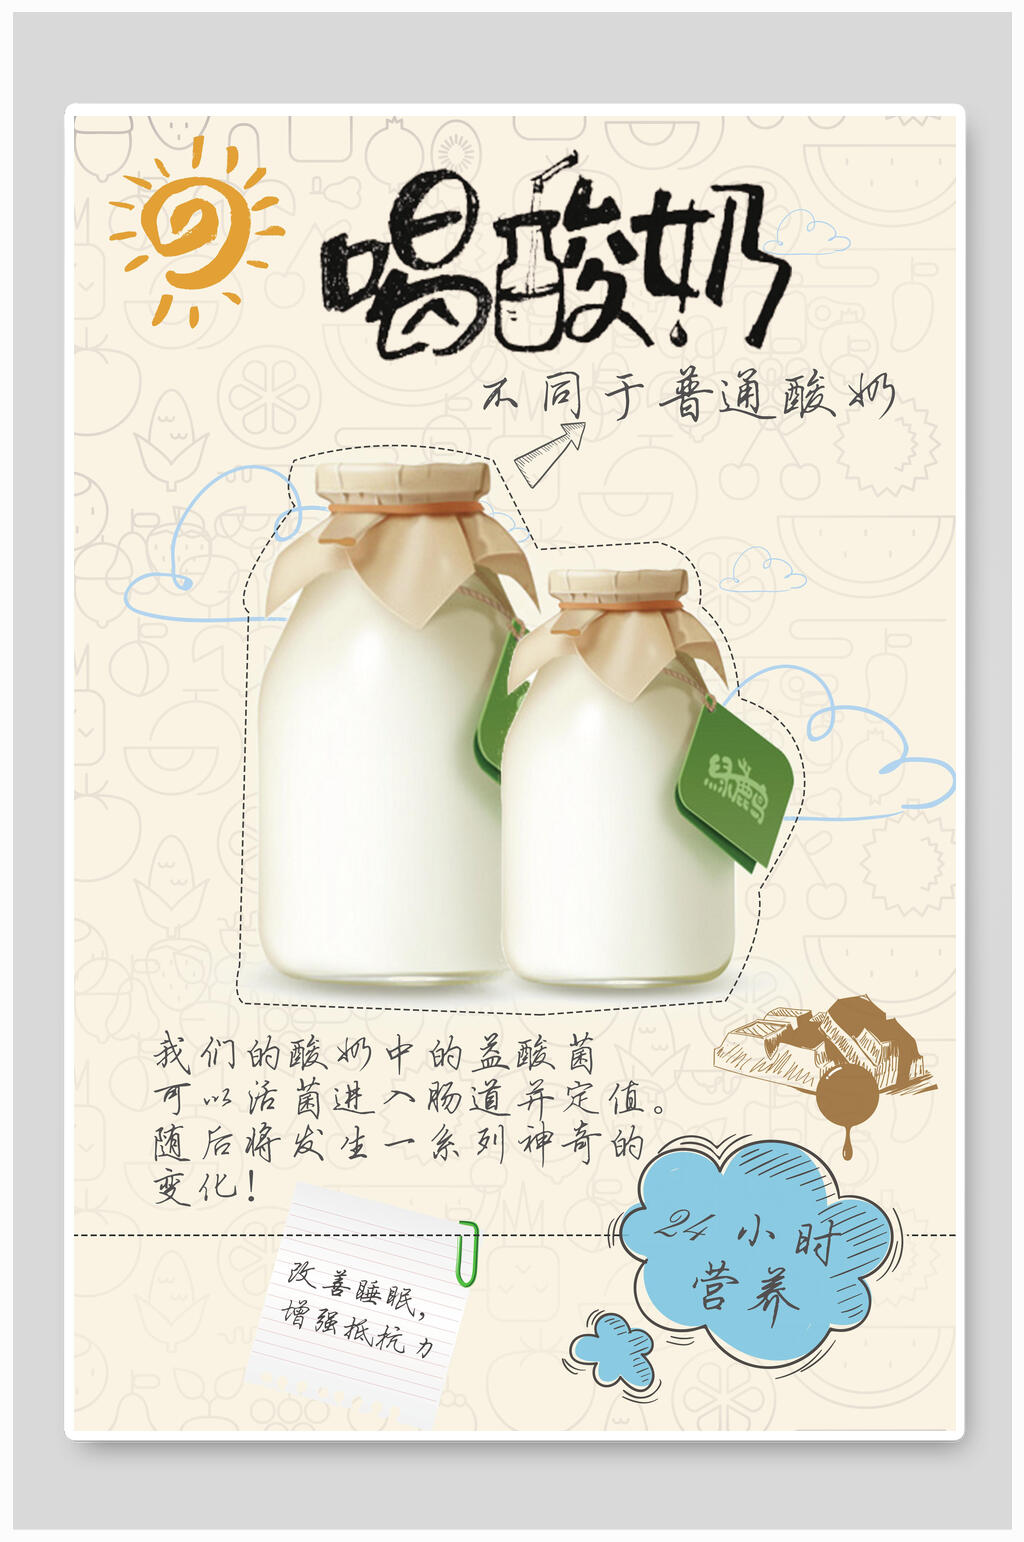 关于制作酸奶的手抄报图片